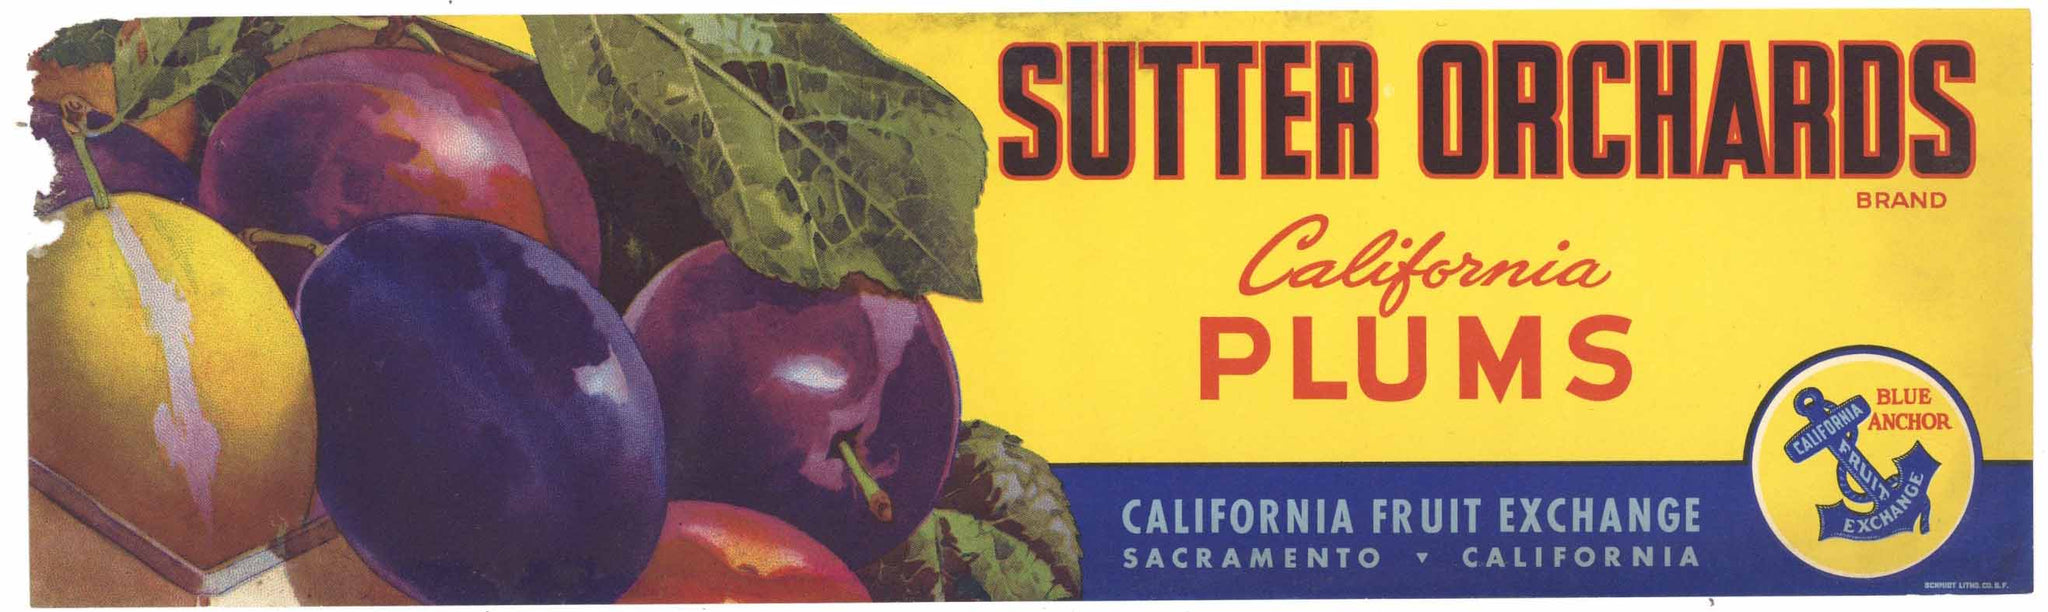 Sutter Orchards Brand Vintage Plum Crate Label, damage